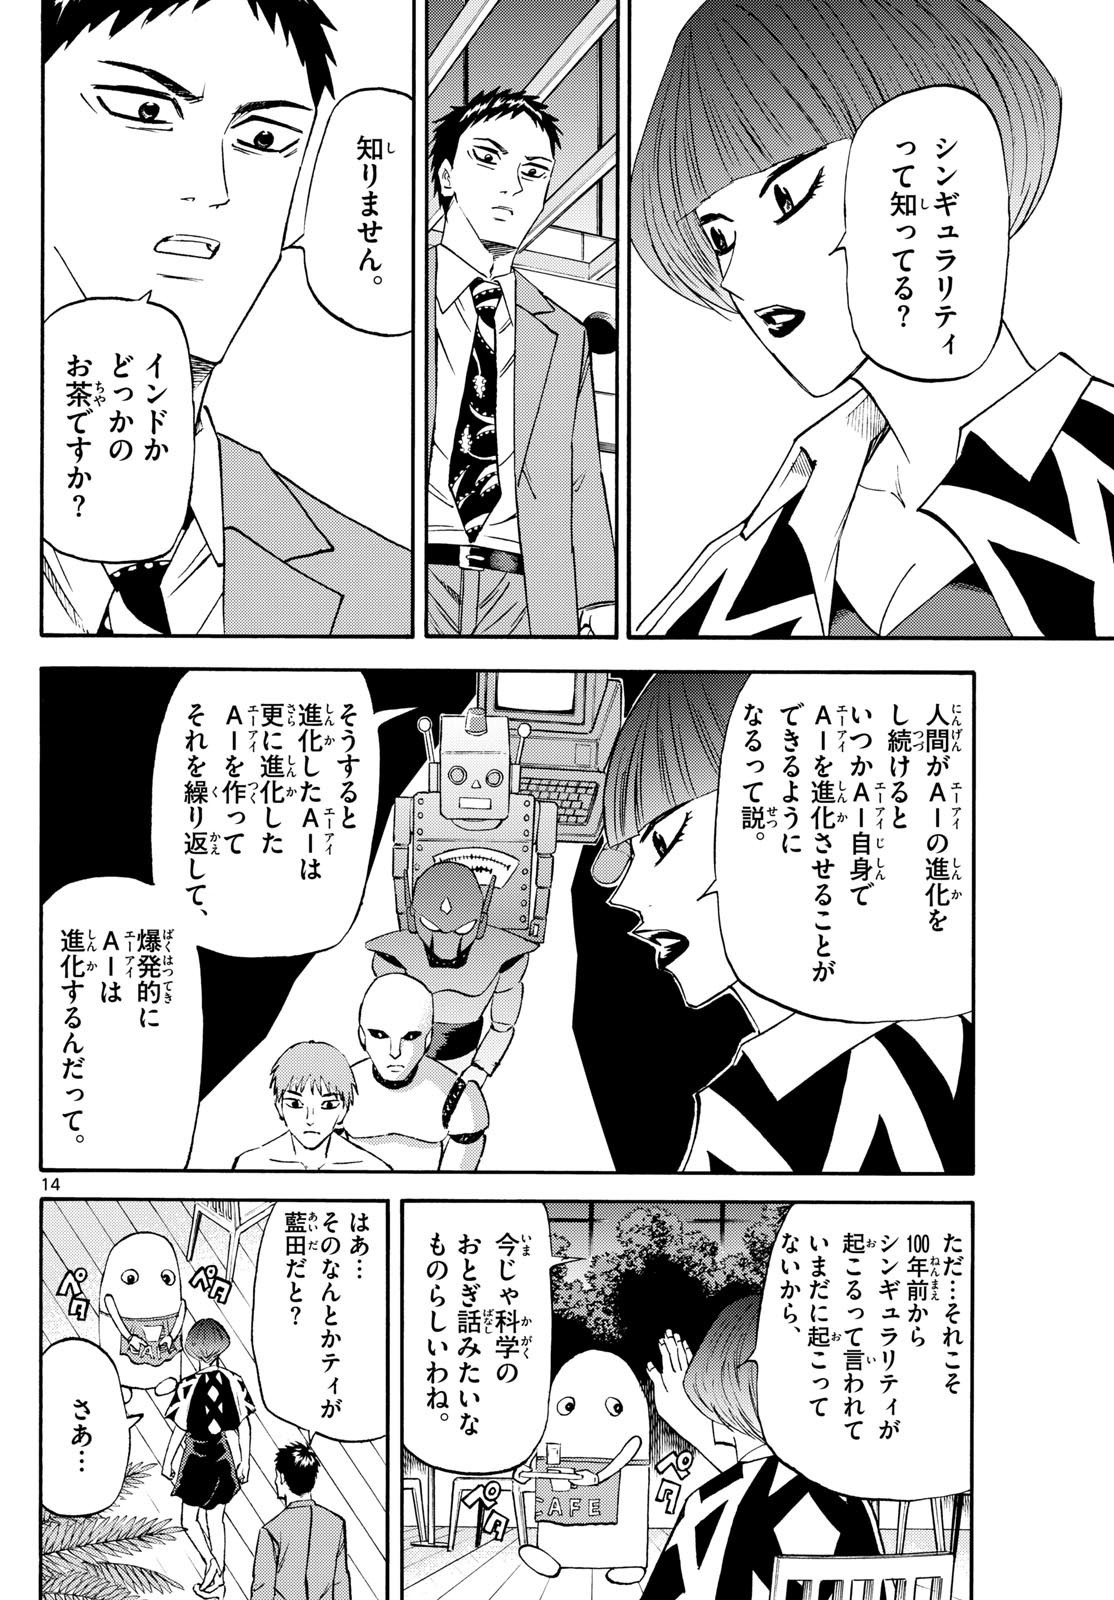 Ryu-to-Ichigo - Chapter 201 - Page 14